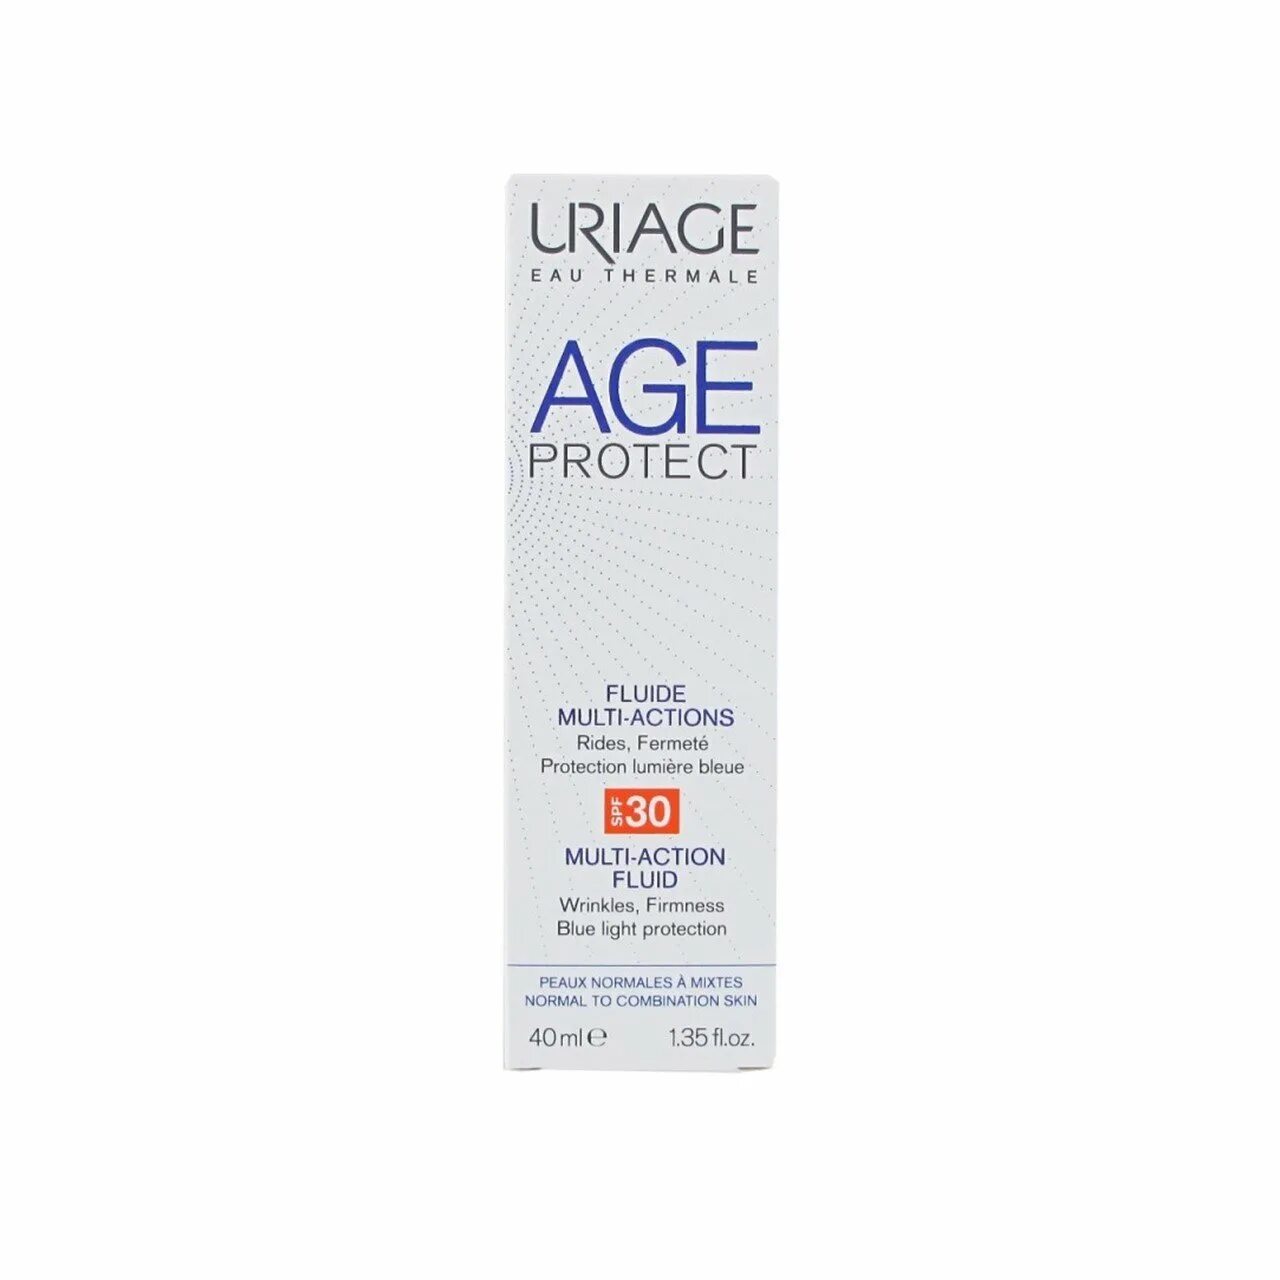 Урьяж эмульсия. Урьяж СПФ 30. Урьяж эйдж Протект СПФ 30 дневной. Uriage age protect Multi-Action SPF 30 многофункциональный. Uriage крем age protect Multi-Action Cream SPF 30.